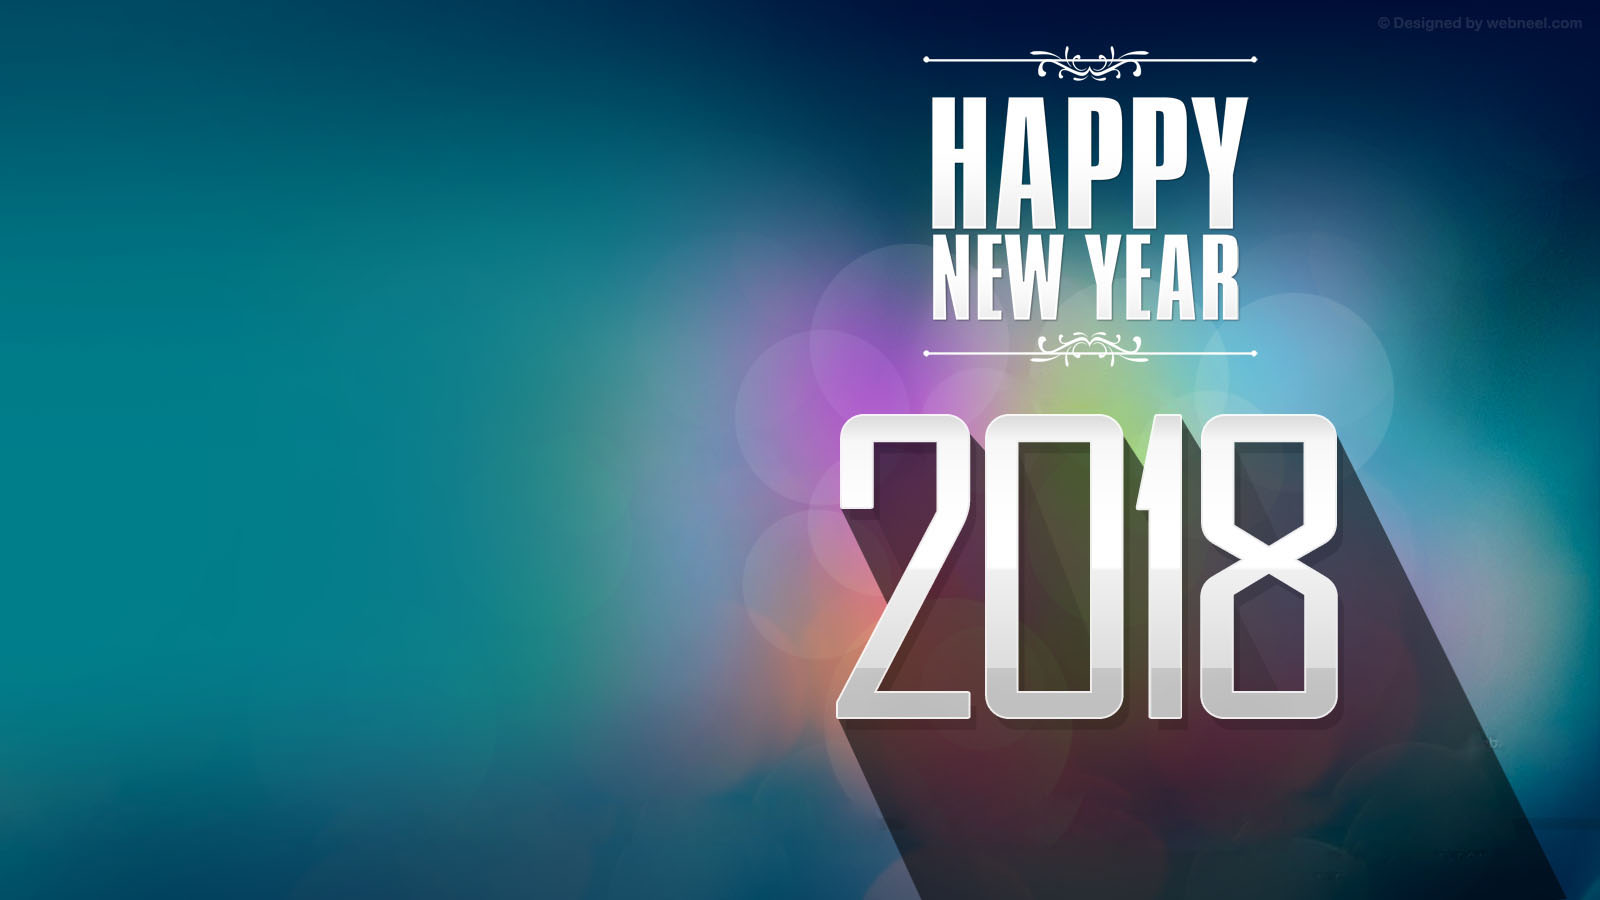 2018 Wallpaper, Happy New Year 2018, Happy New Year Wallpapers, Hd New Years Wallpapers, New Year, Santa Wallpaper